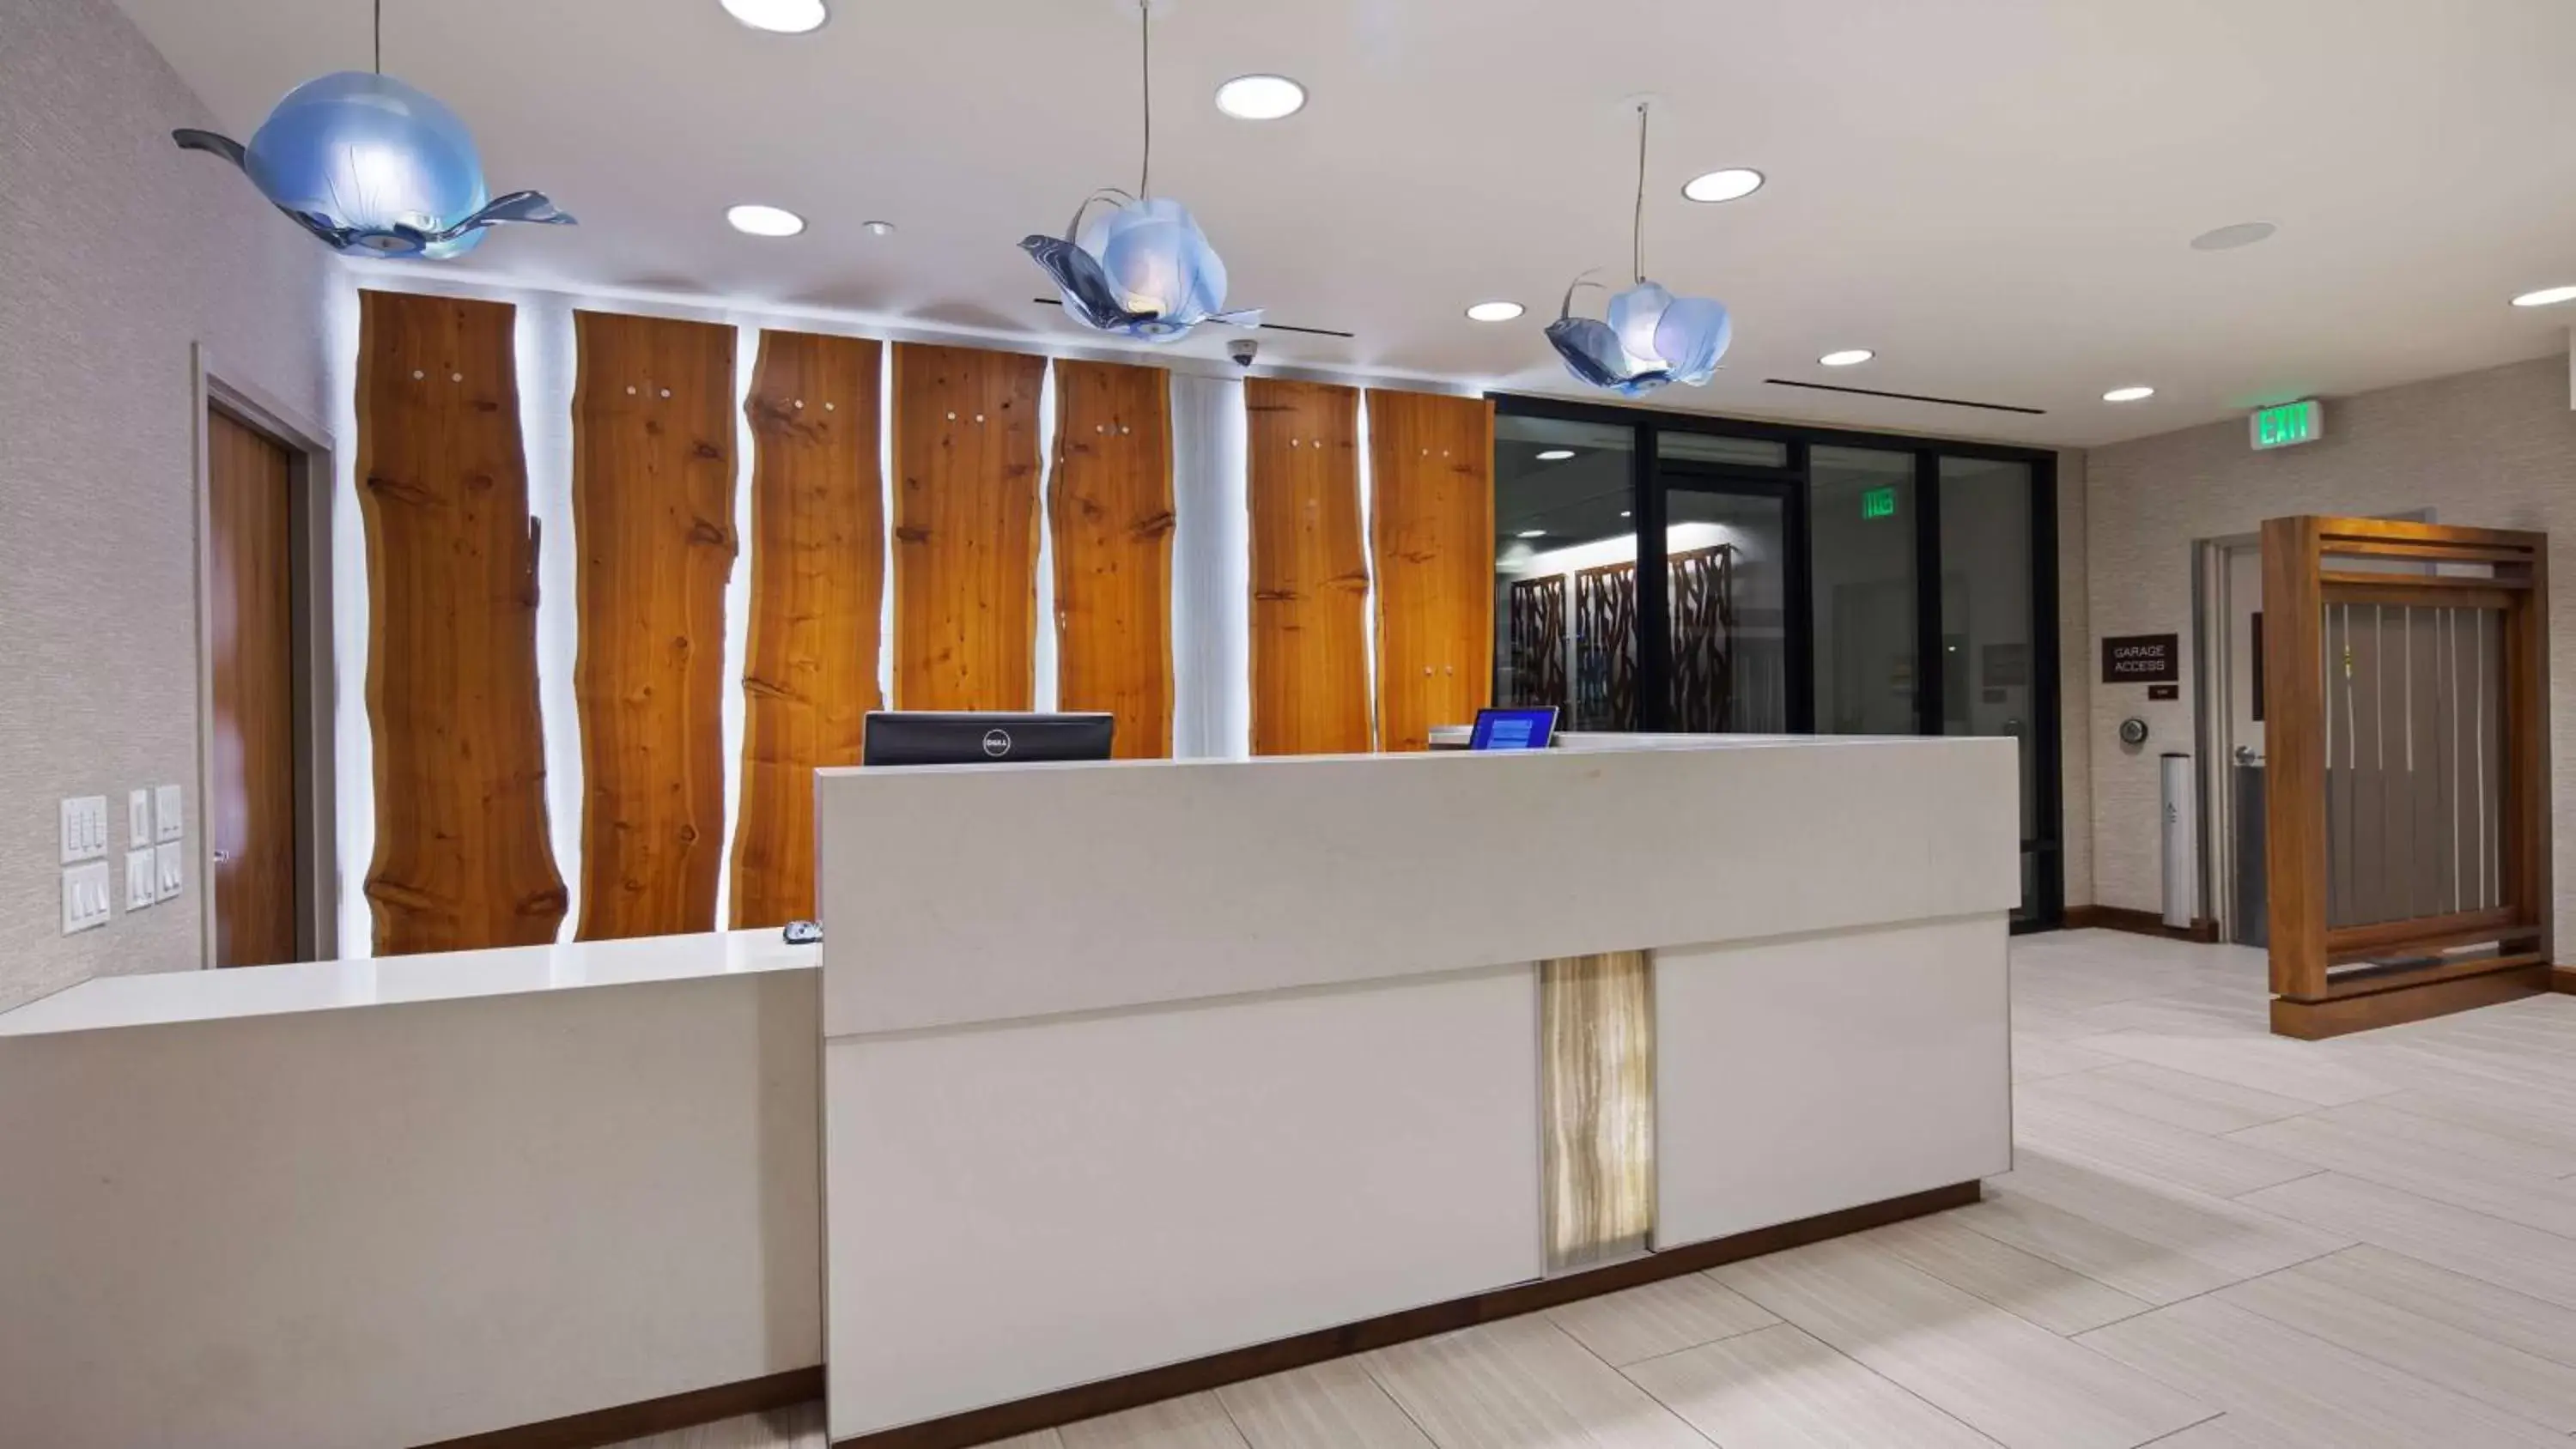 Lobby or reception, Lobby/Reception in Best Western Plus Bayside Inn